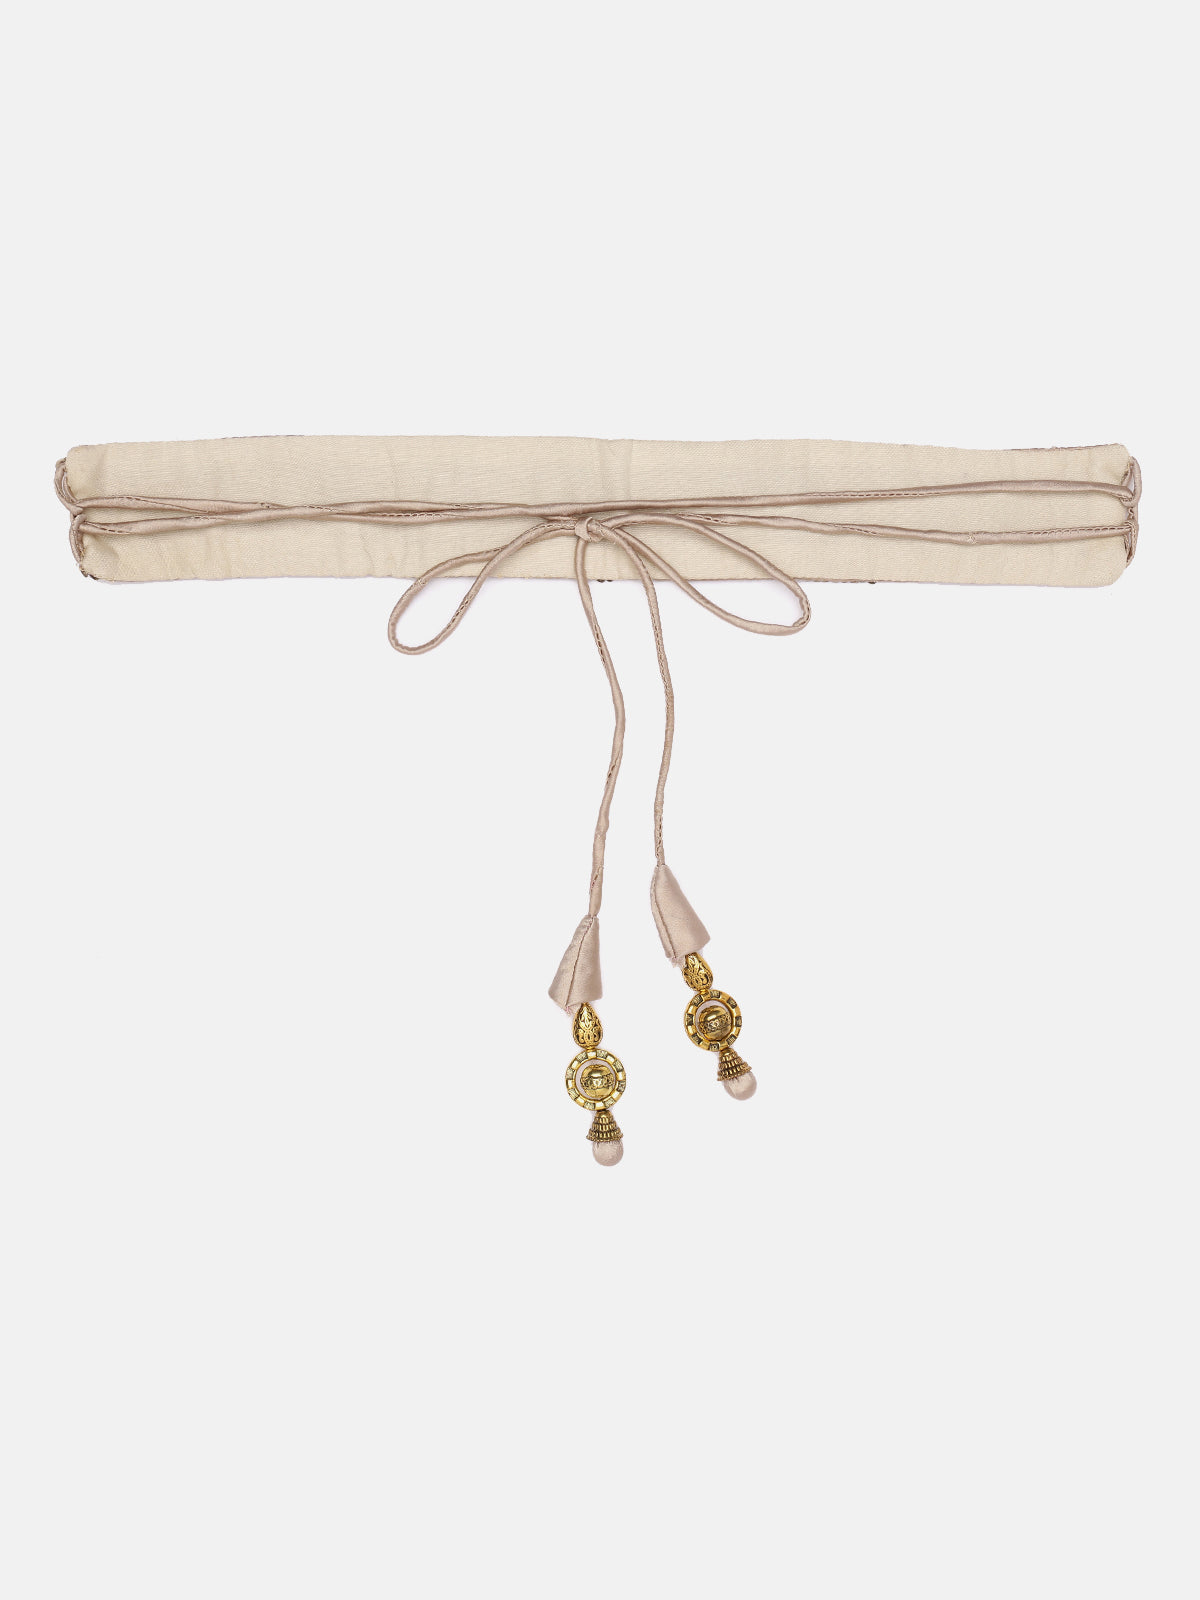 Beige Hand-Made Ethnic Waist Belt With Tassels